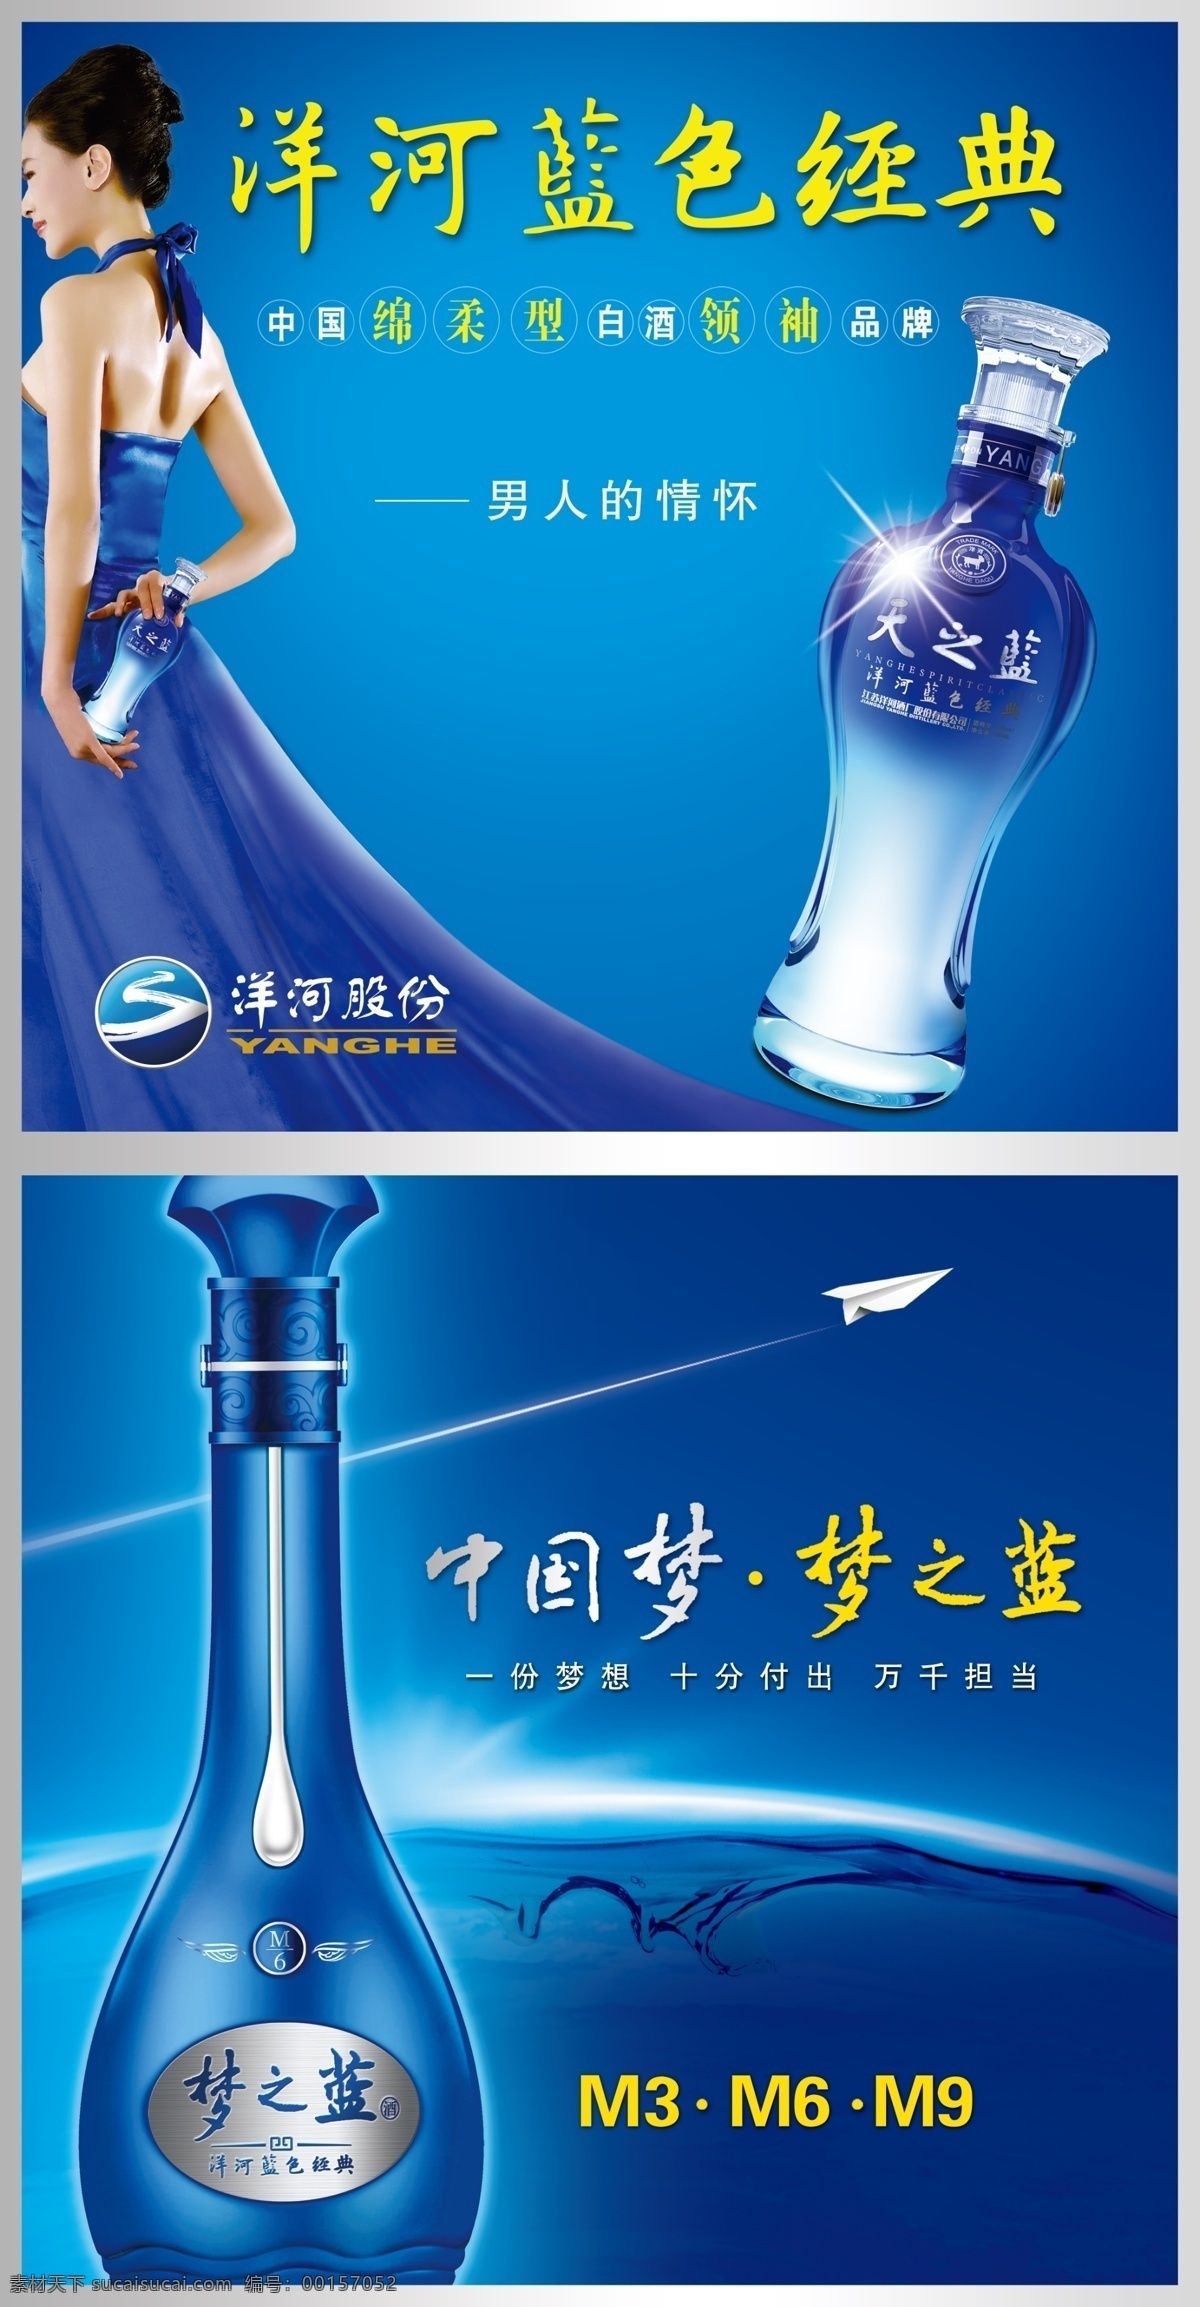 洋河 酒业 蓝色 经典 酒瓶 蓝色背景 花纹 标题 梦之蓝 商标 广告设计模板 源文件